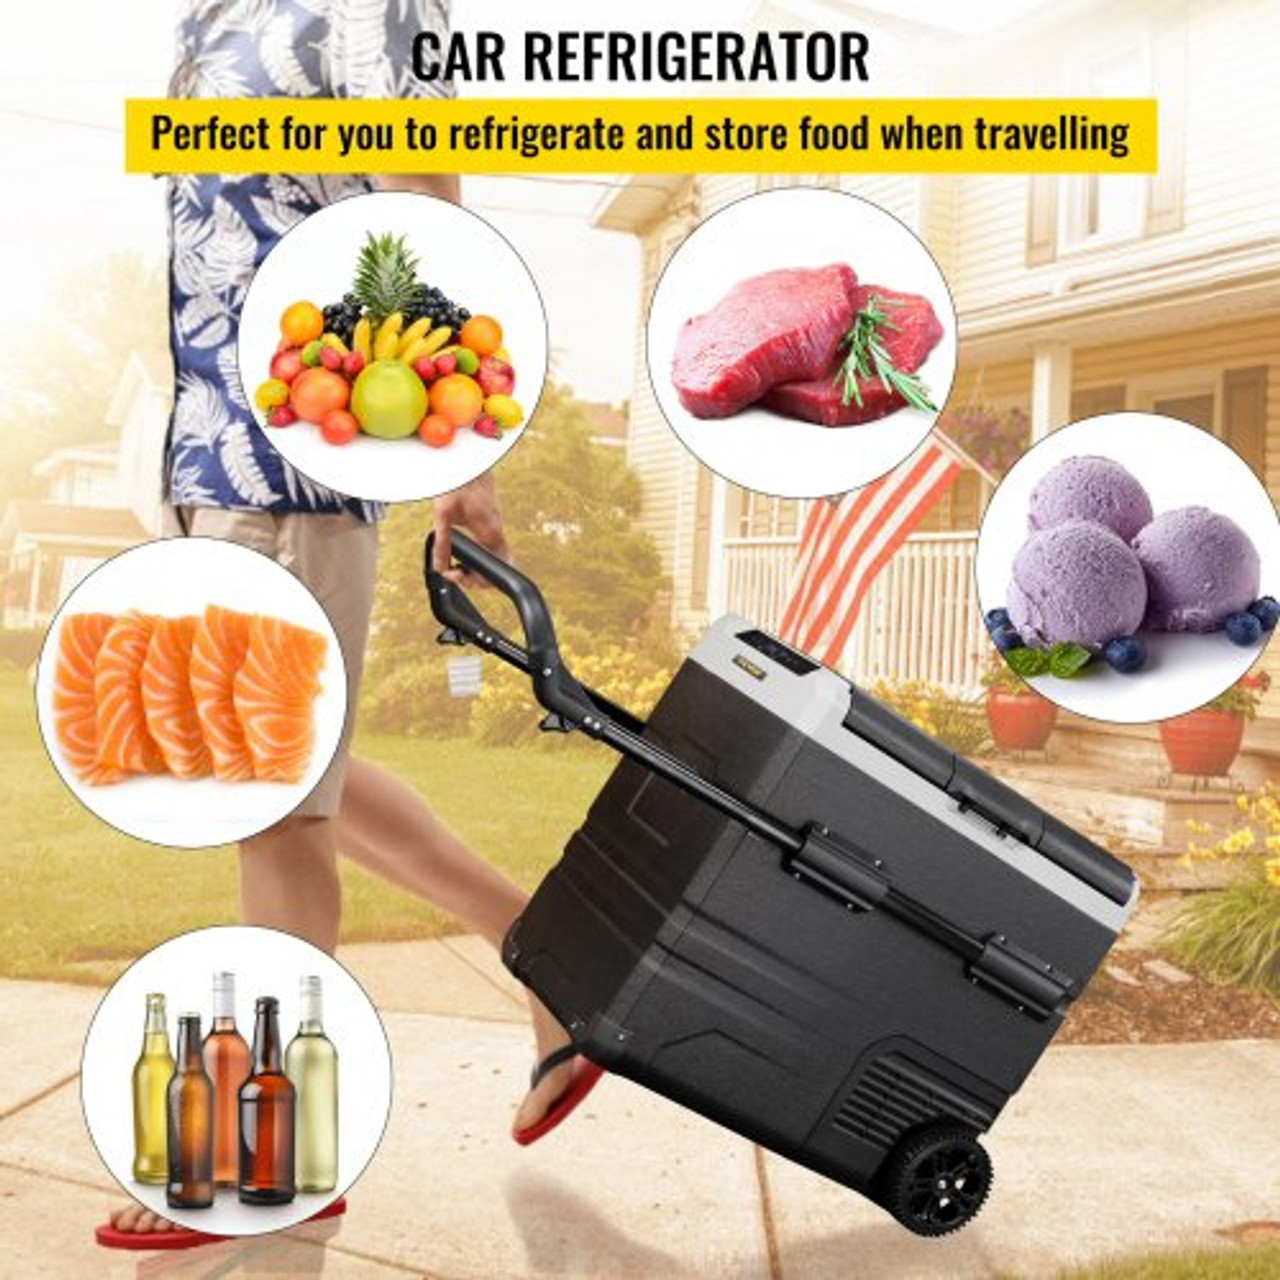 Portable Refrigerator Cars, Car Refrigerator Freezer